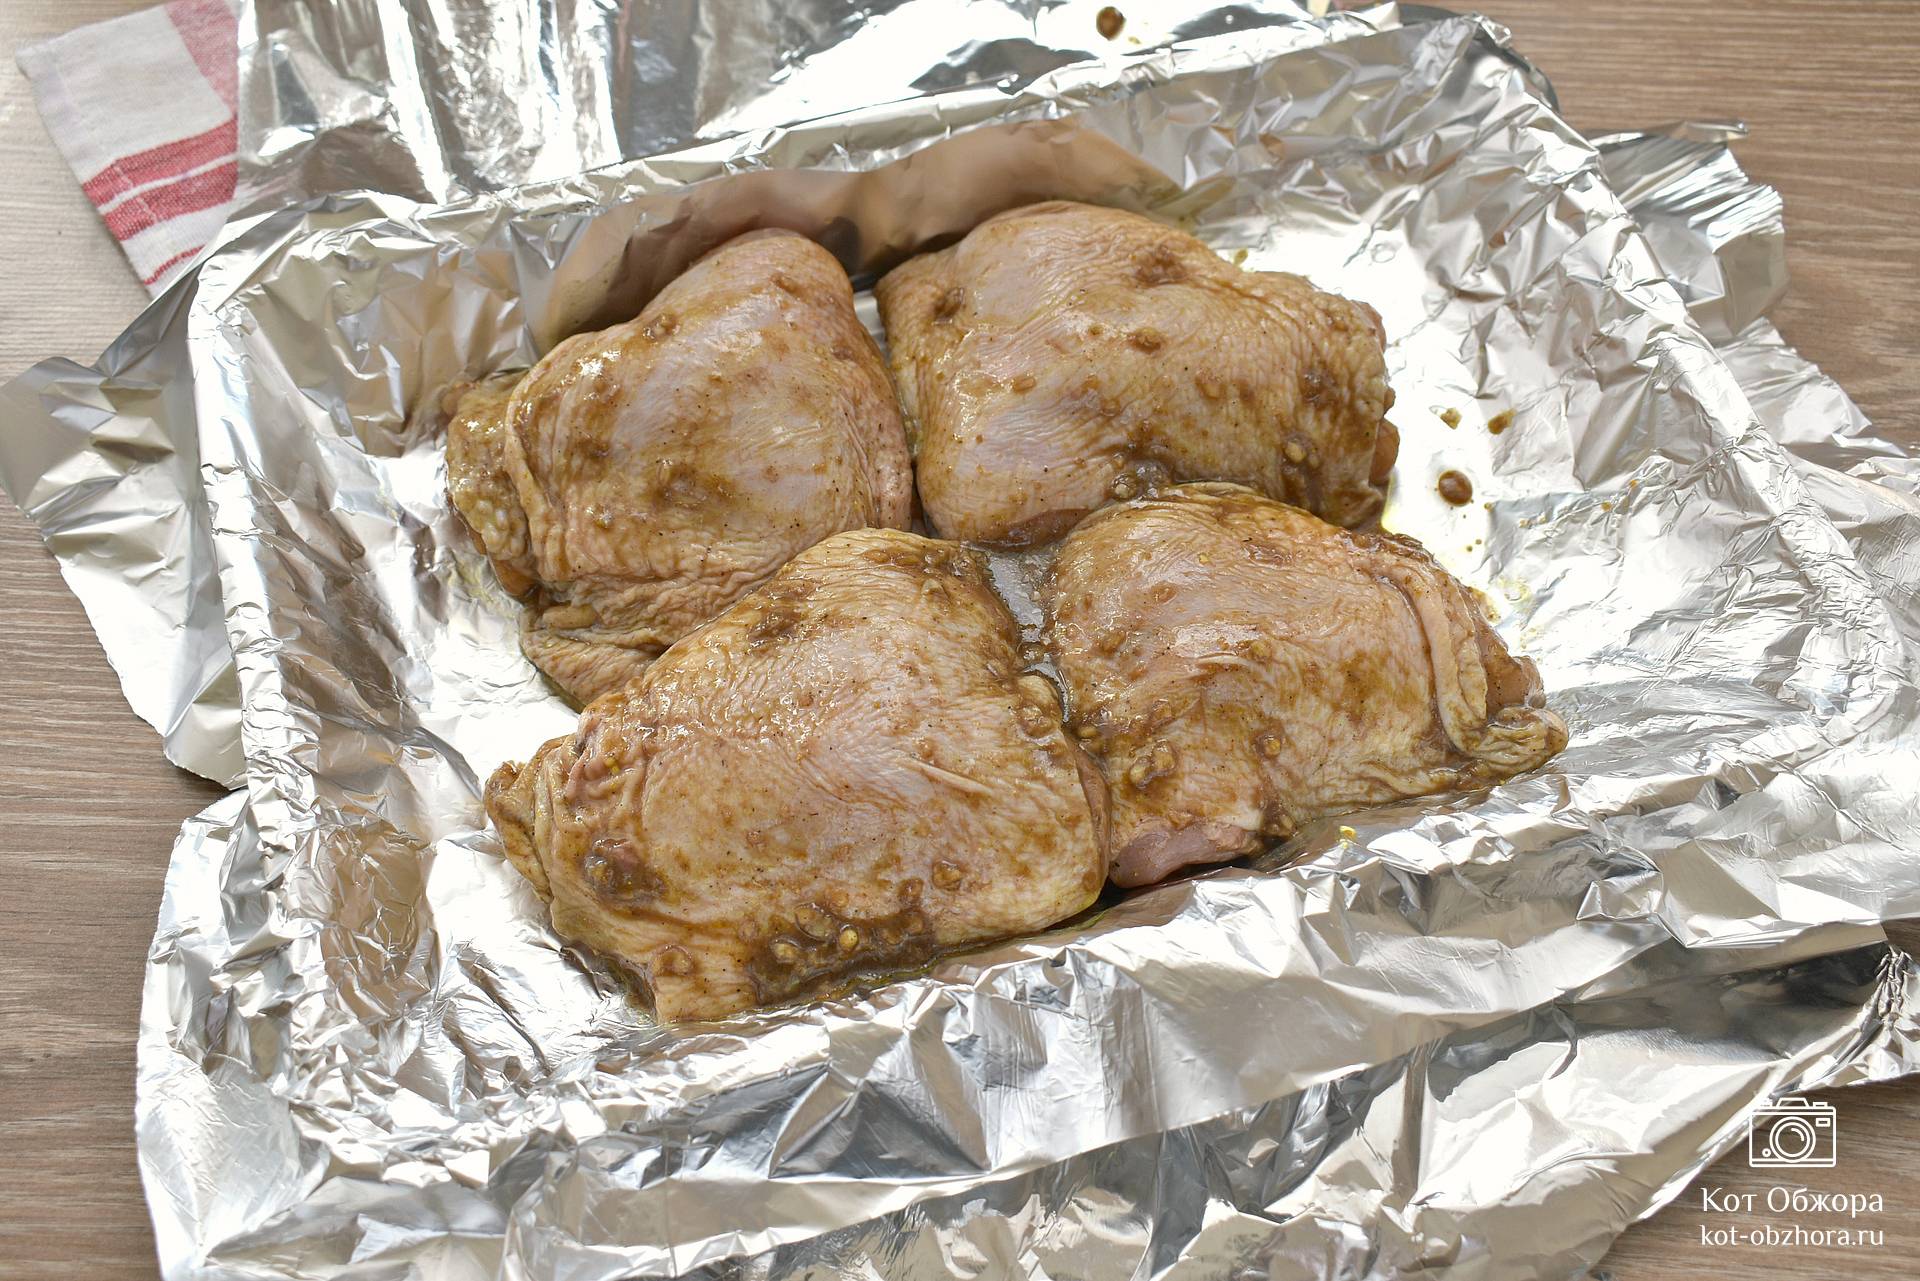 Запеченные Куриные Бедрышки в фольге Без Косточки с Плавленым сыром